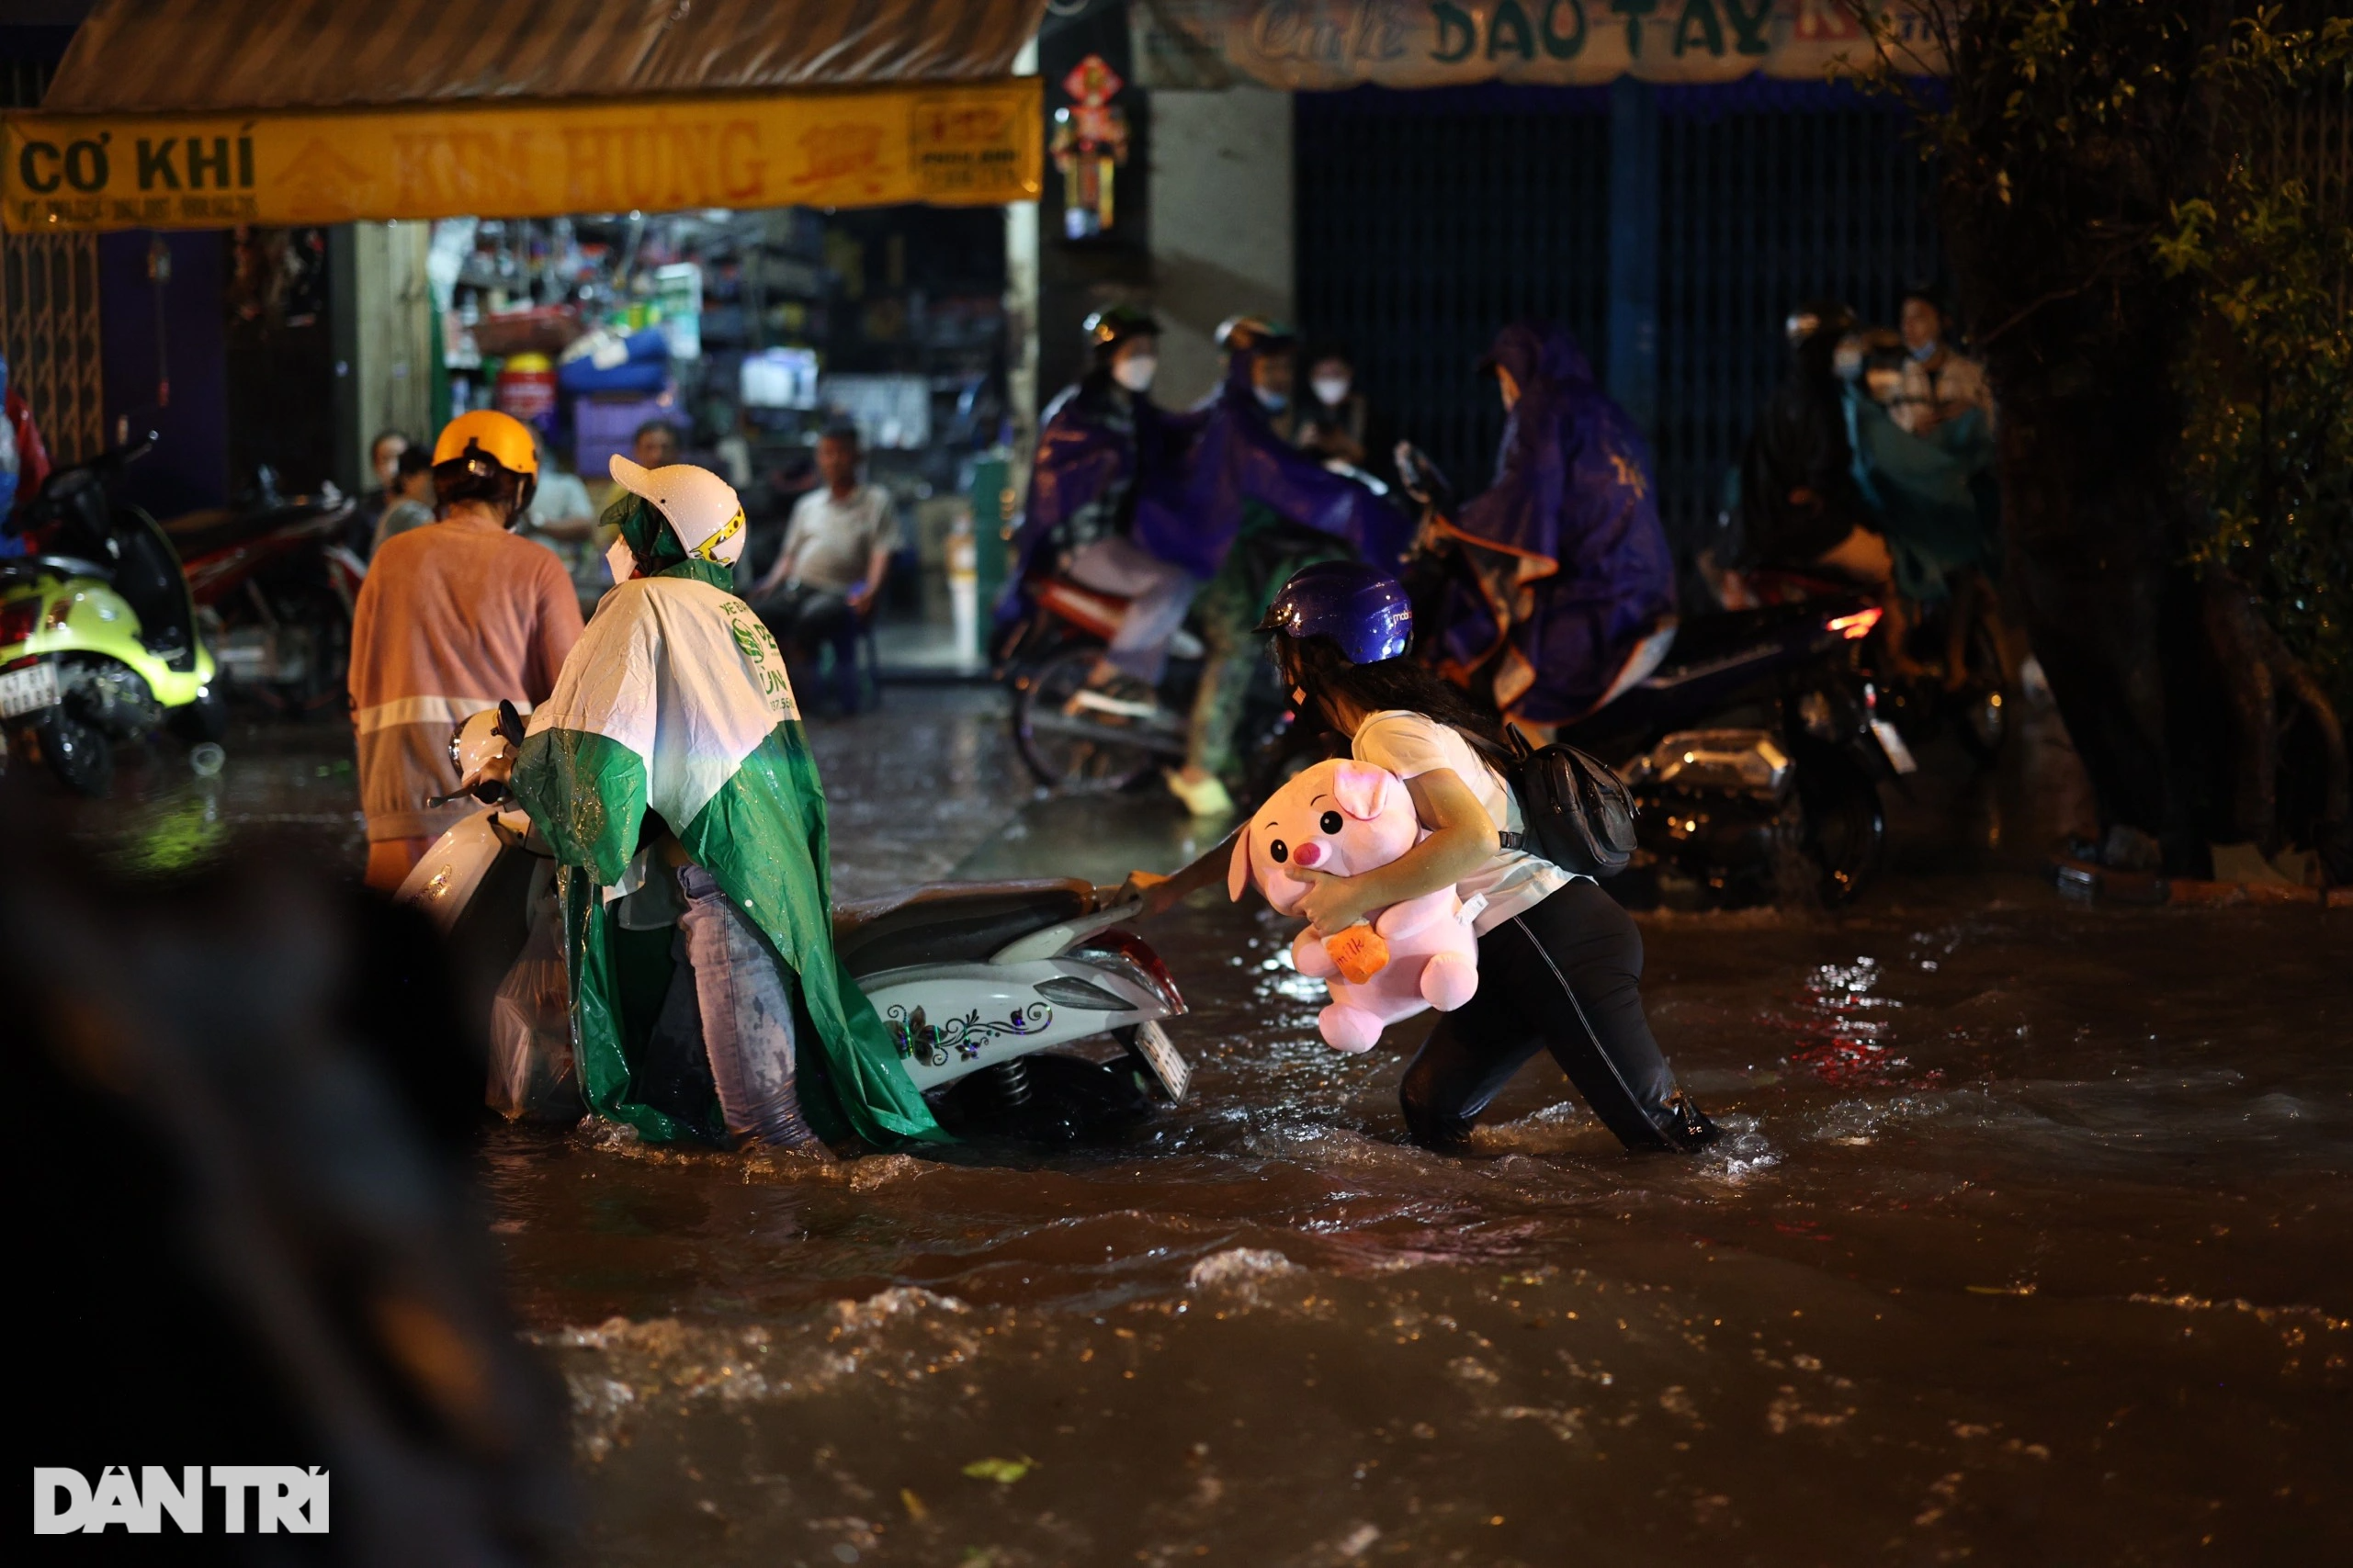 Người dân bì bõm lội nước về nhà trong đêm mưa ở TPHCM - 5